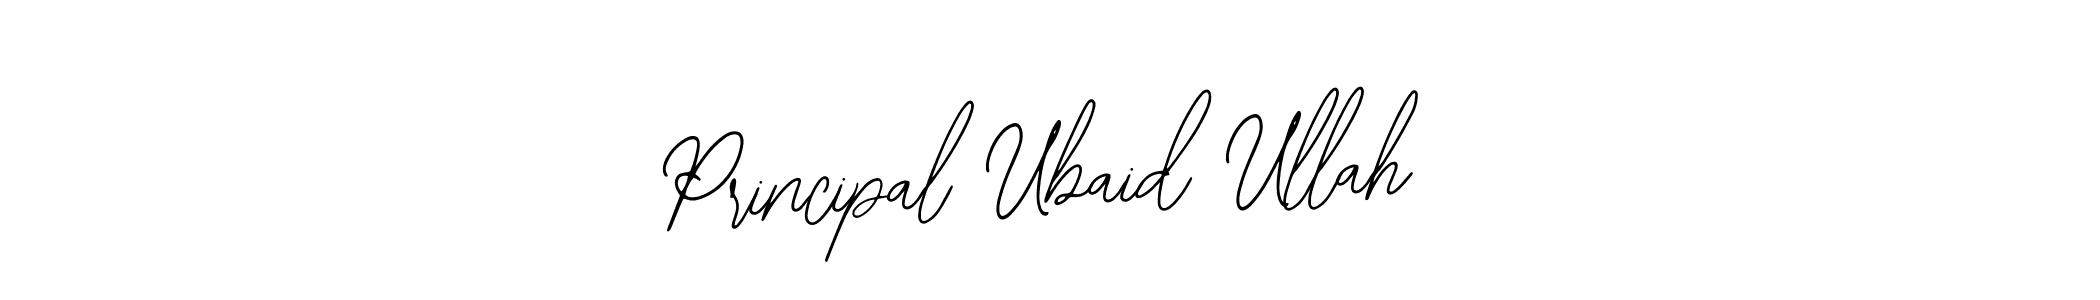 How to Draw Principal Ubaid Ullah signature style? Bearetta-2O07w is a latest design signature styles for name Principal Ubaid Ullah. Principal Ubaid Ullah signature style 12 images and pictures png